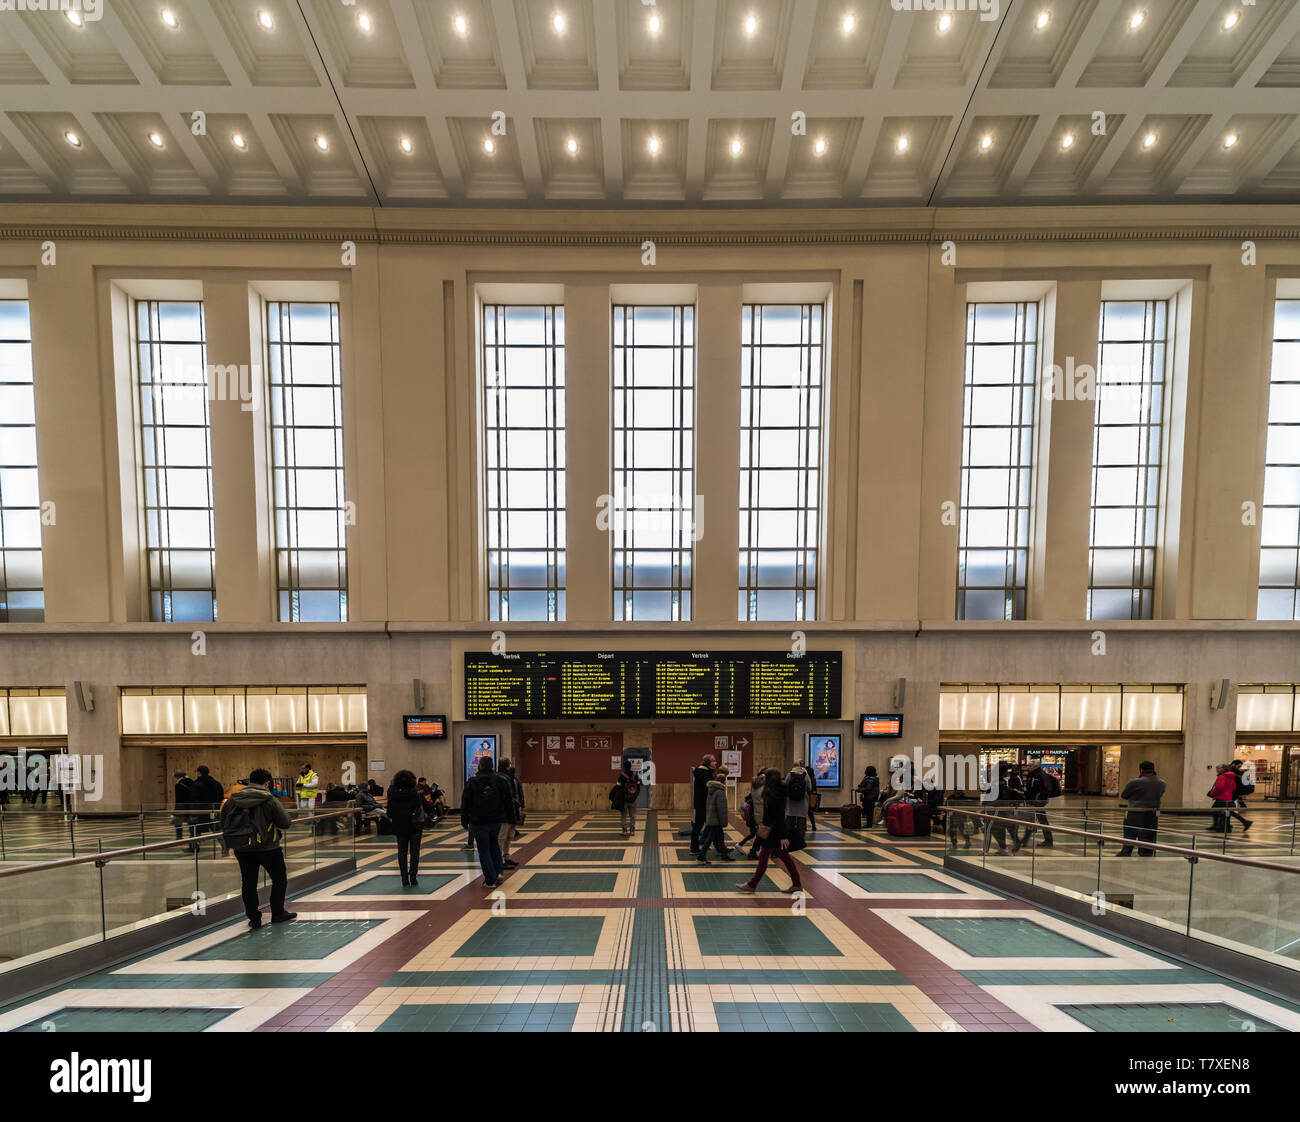 Bruxelles, Belgique - 03 10 2019 : carreaux à motifs rectangulaires colorés et les banlieusards de marcher dans la salle d'attente principale de la gare de Bruxelles Nord Banque D'Images